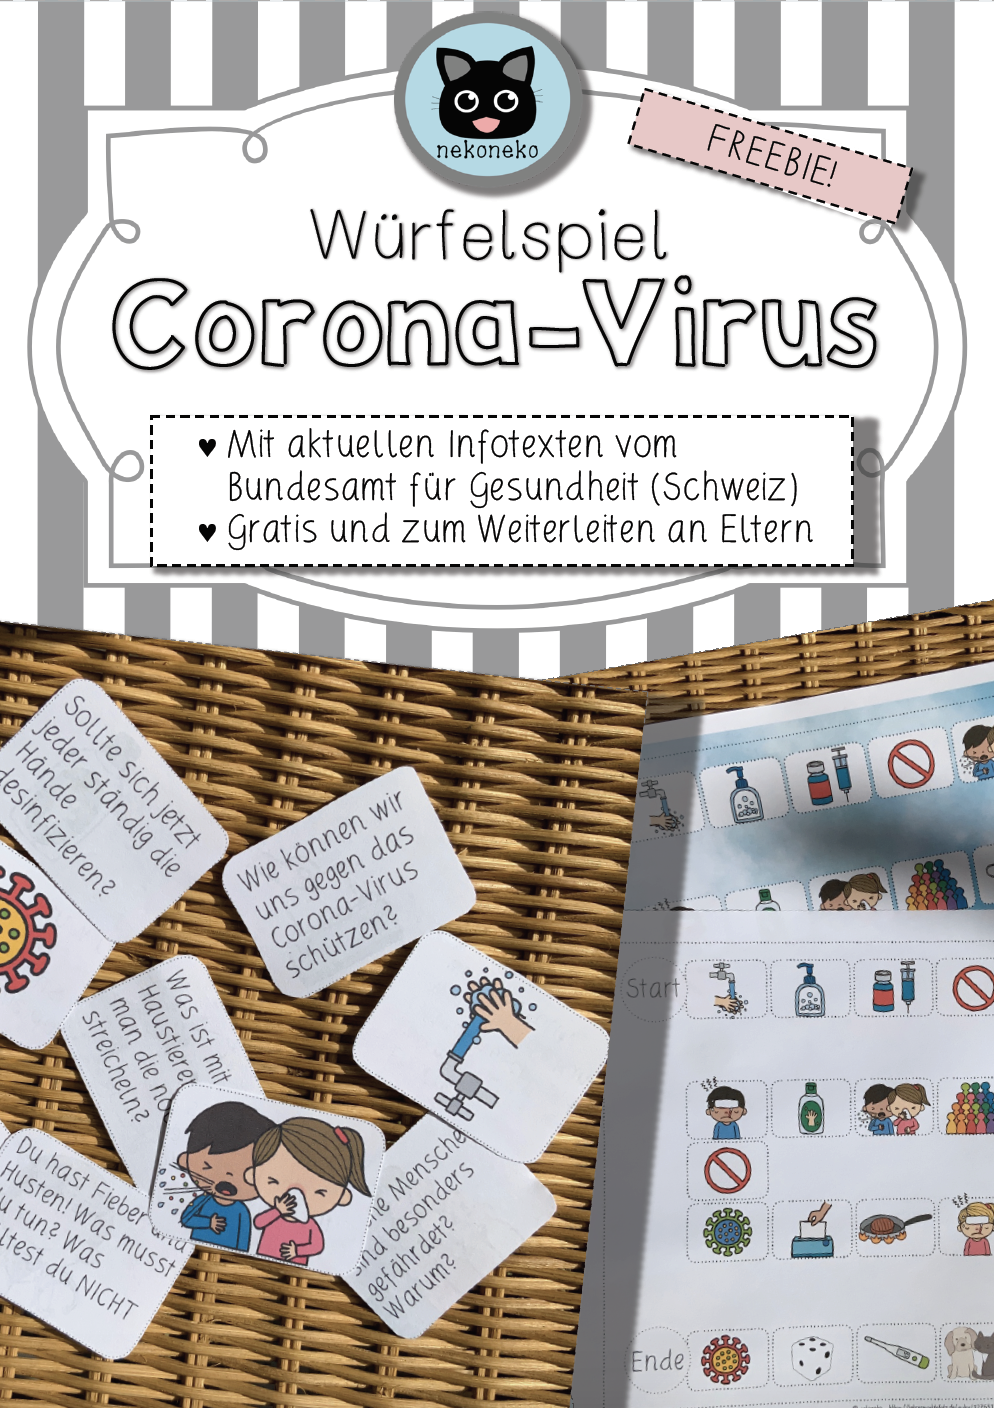 Würfelspiel Coronavirus